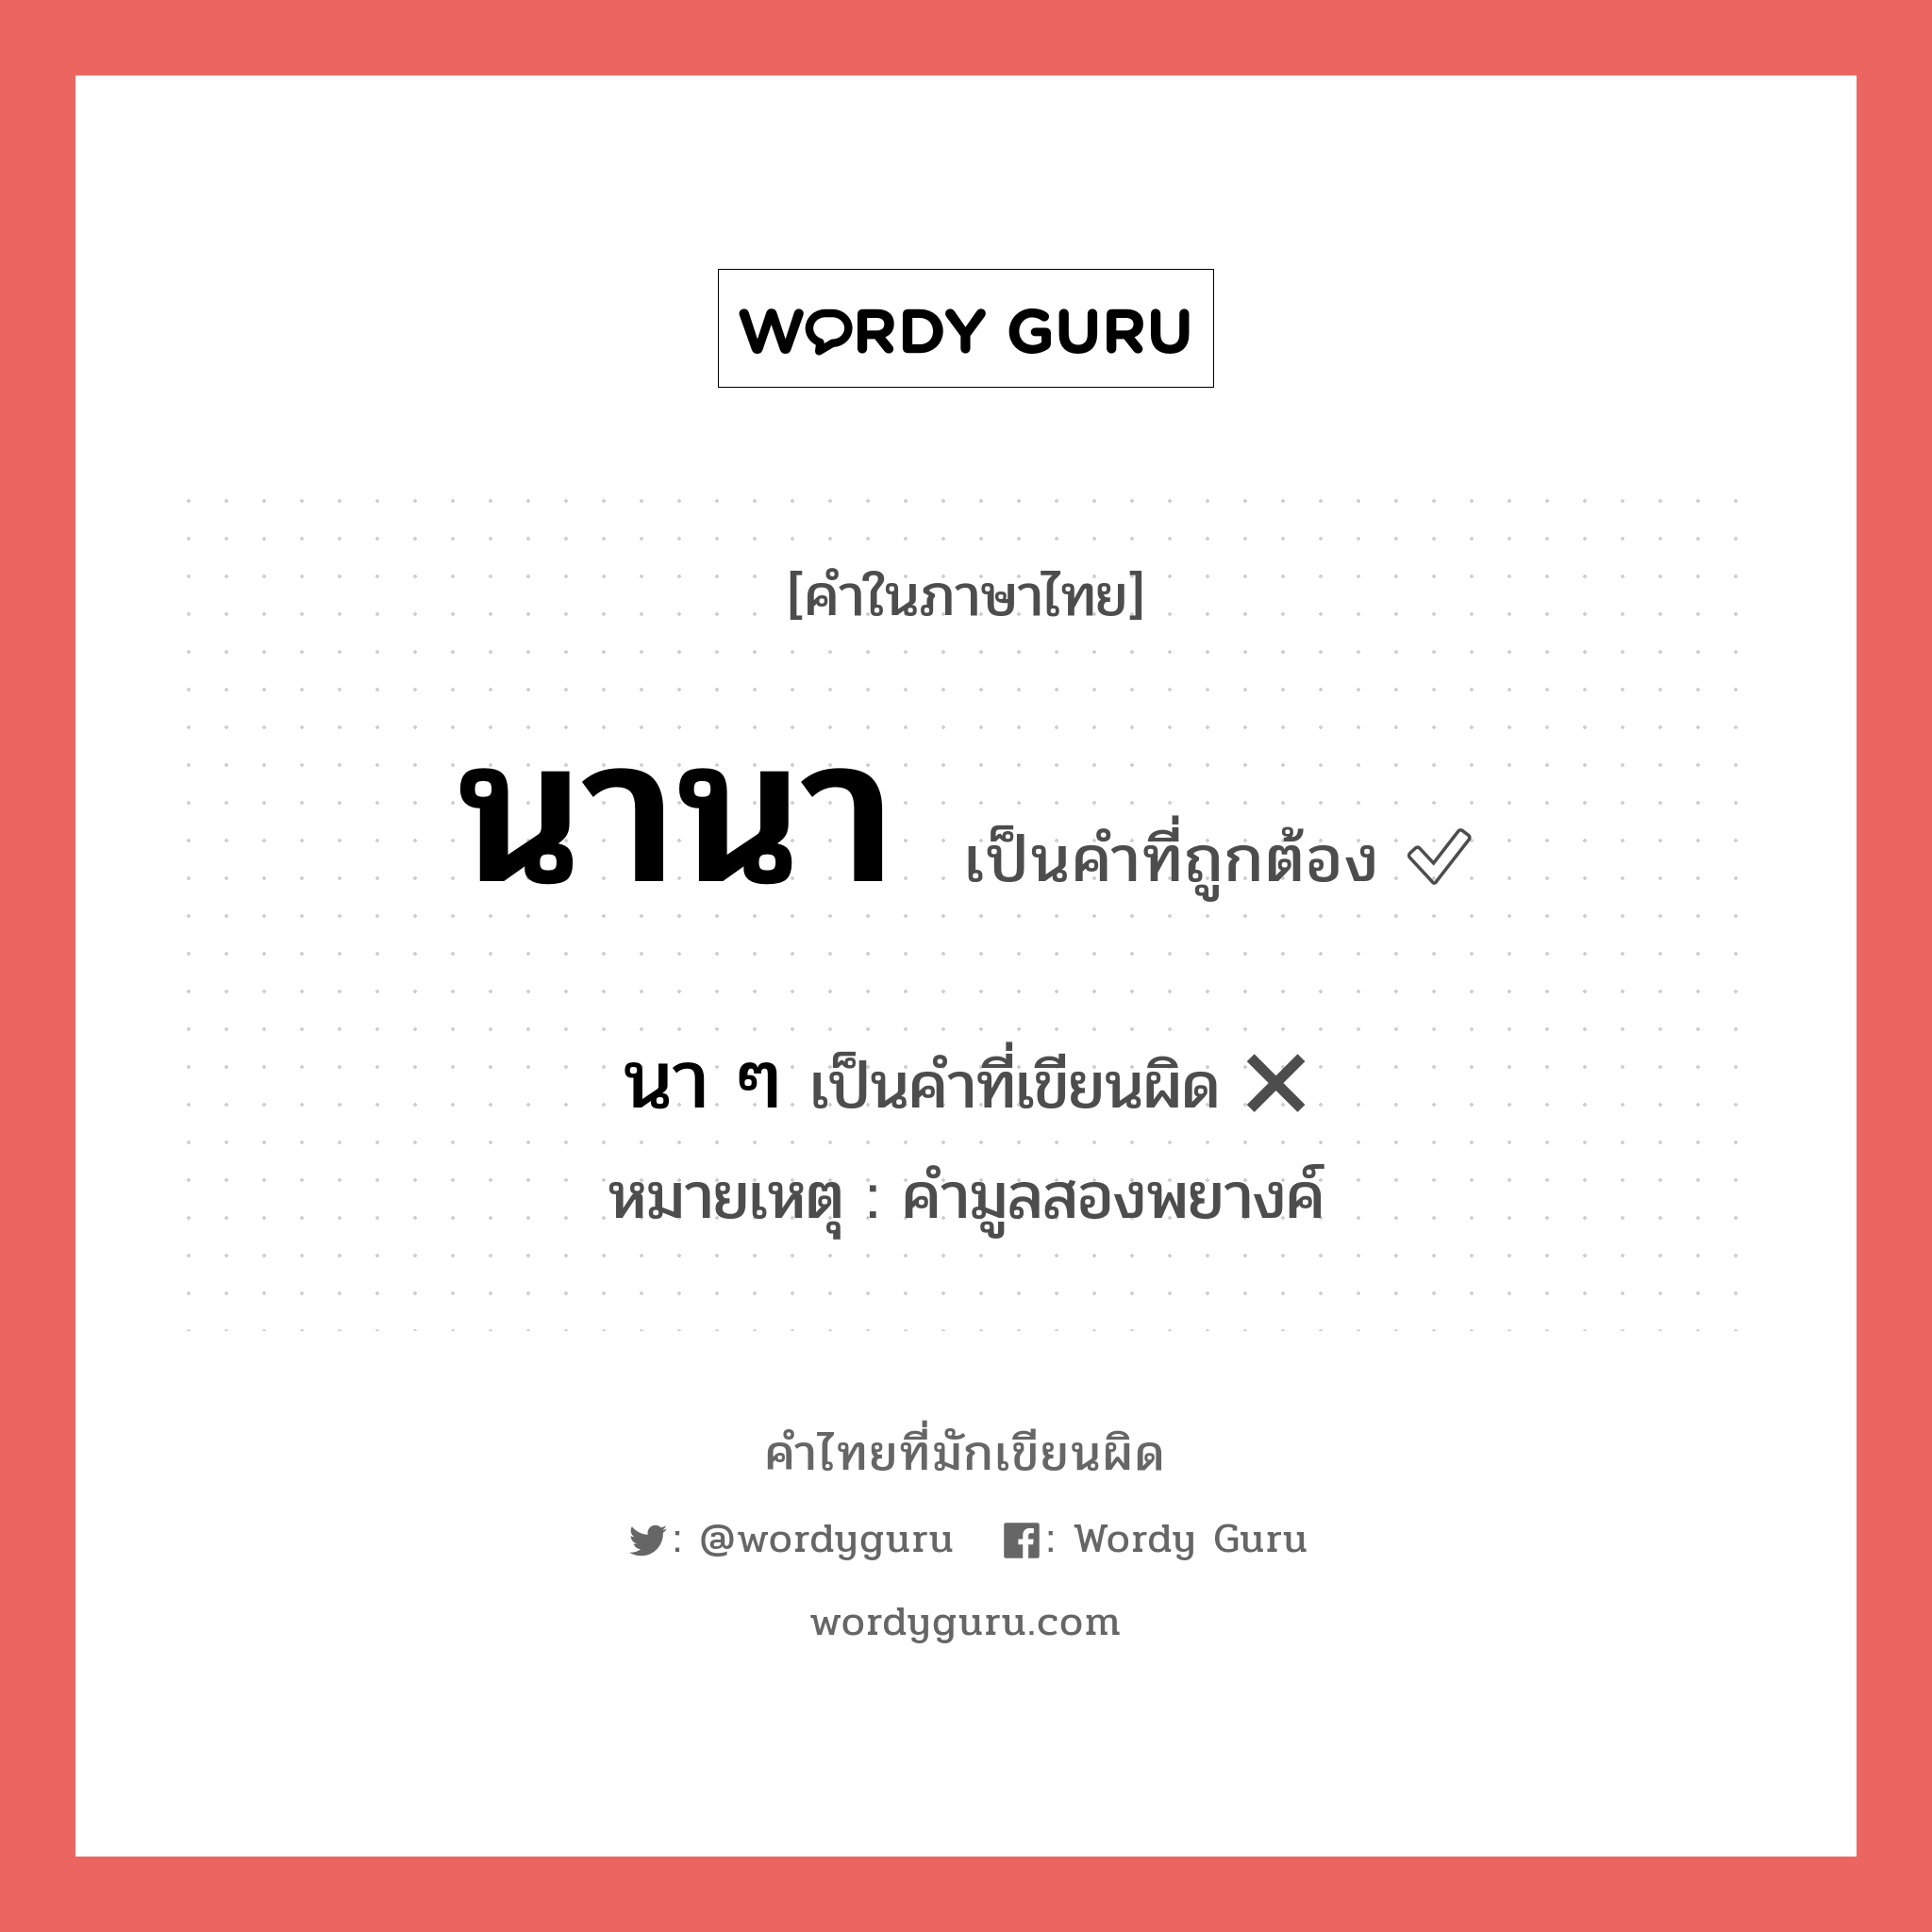 นา ๆ หรือ นานา คำไหนเขียนถูก?, คำในภาษาไทยที่มักเขียนผิด นา ๆ คำที่ผิด ❌ นานา หมายเหตุ คำมูลสองพยางค์